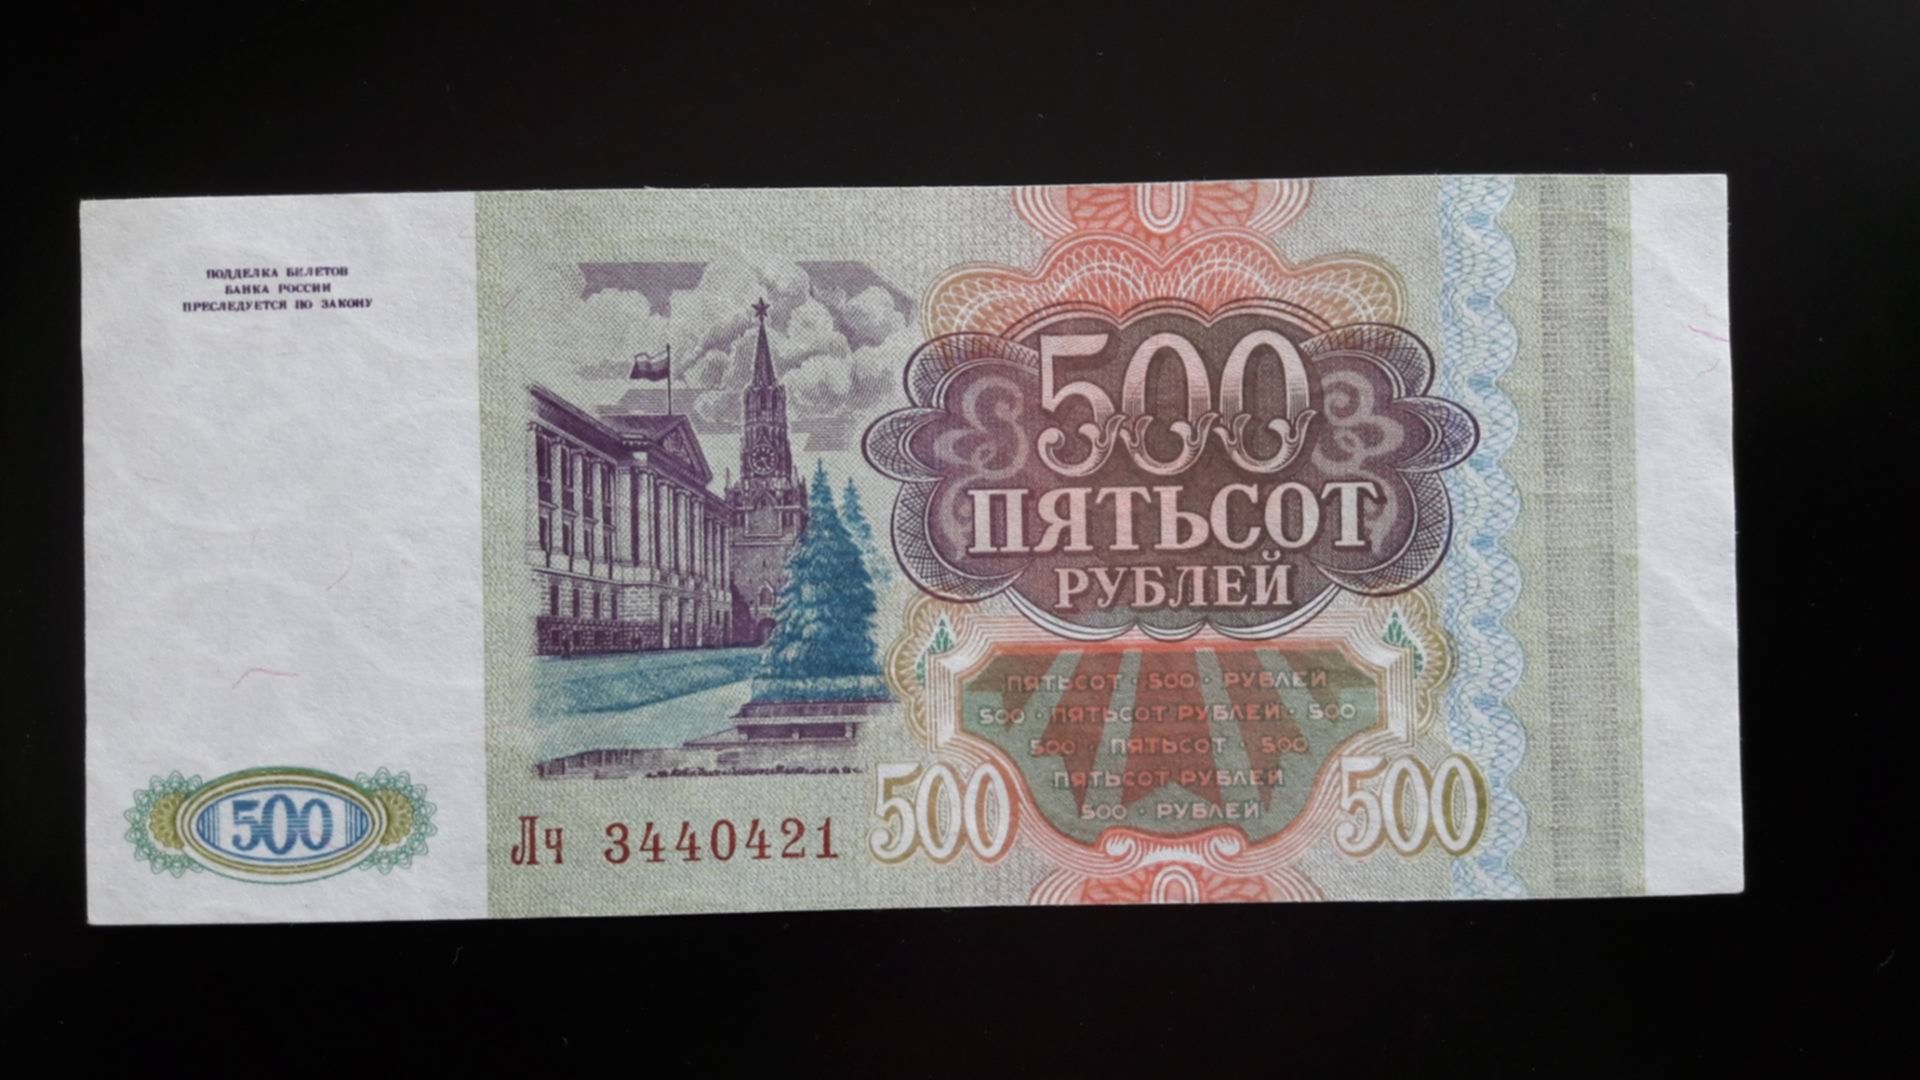 Пятьсот пять рублей. Купюра 500 рублей 1993. Старые пятьсот рублей 1993. Банкнота 500 рублей 1993. 500 Рублей 1993г.